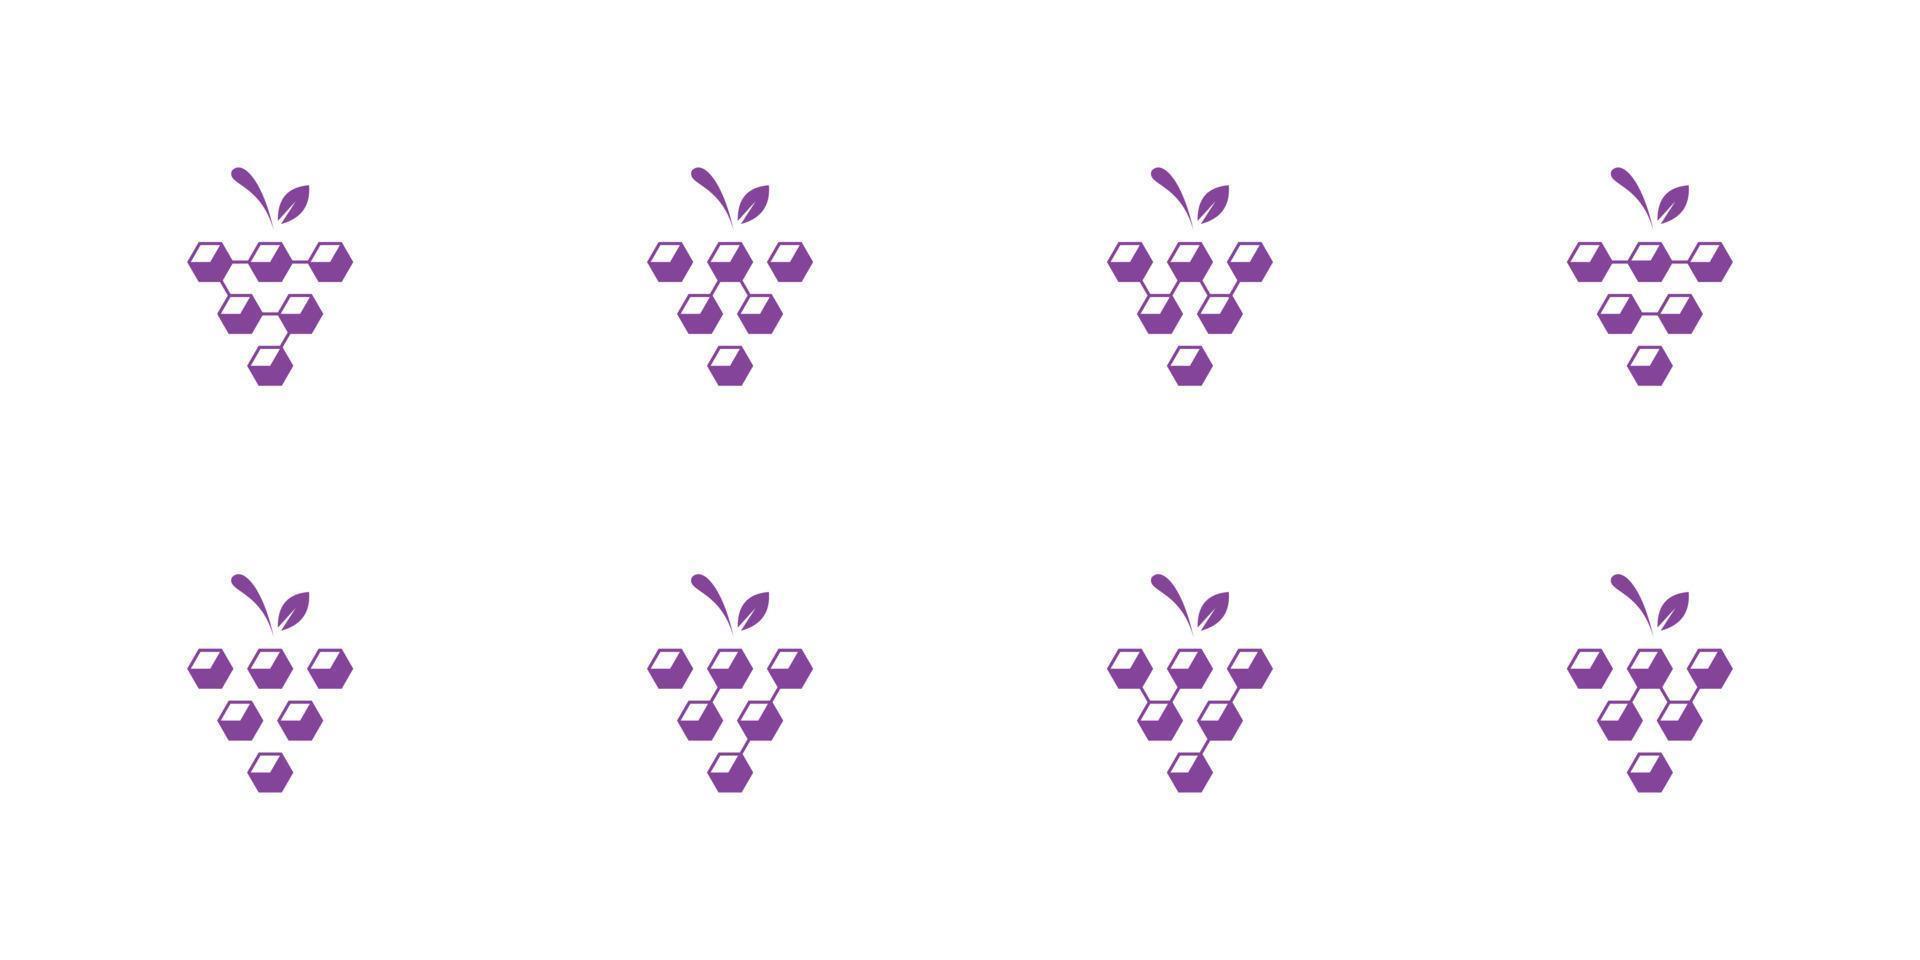 colección abstracta de logotipos de frutas de uva con cuadrados. vectores premium.